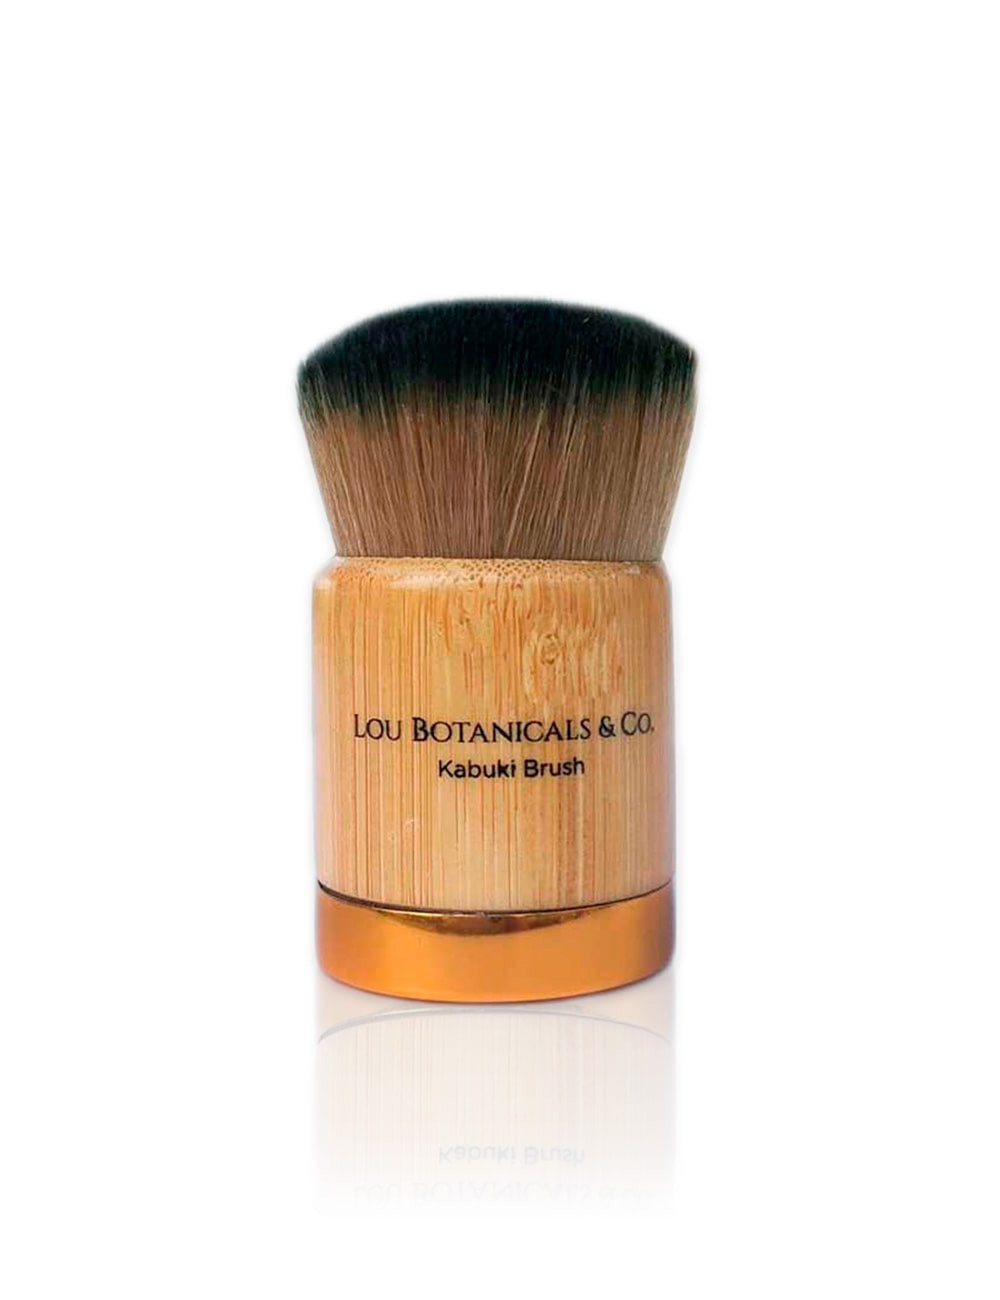 Brocha de bambu ecologico para maquillaje natural rubor base o polvos Kabuki Brush